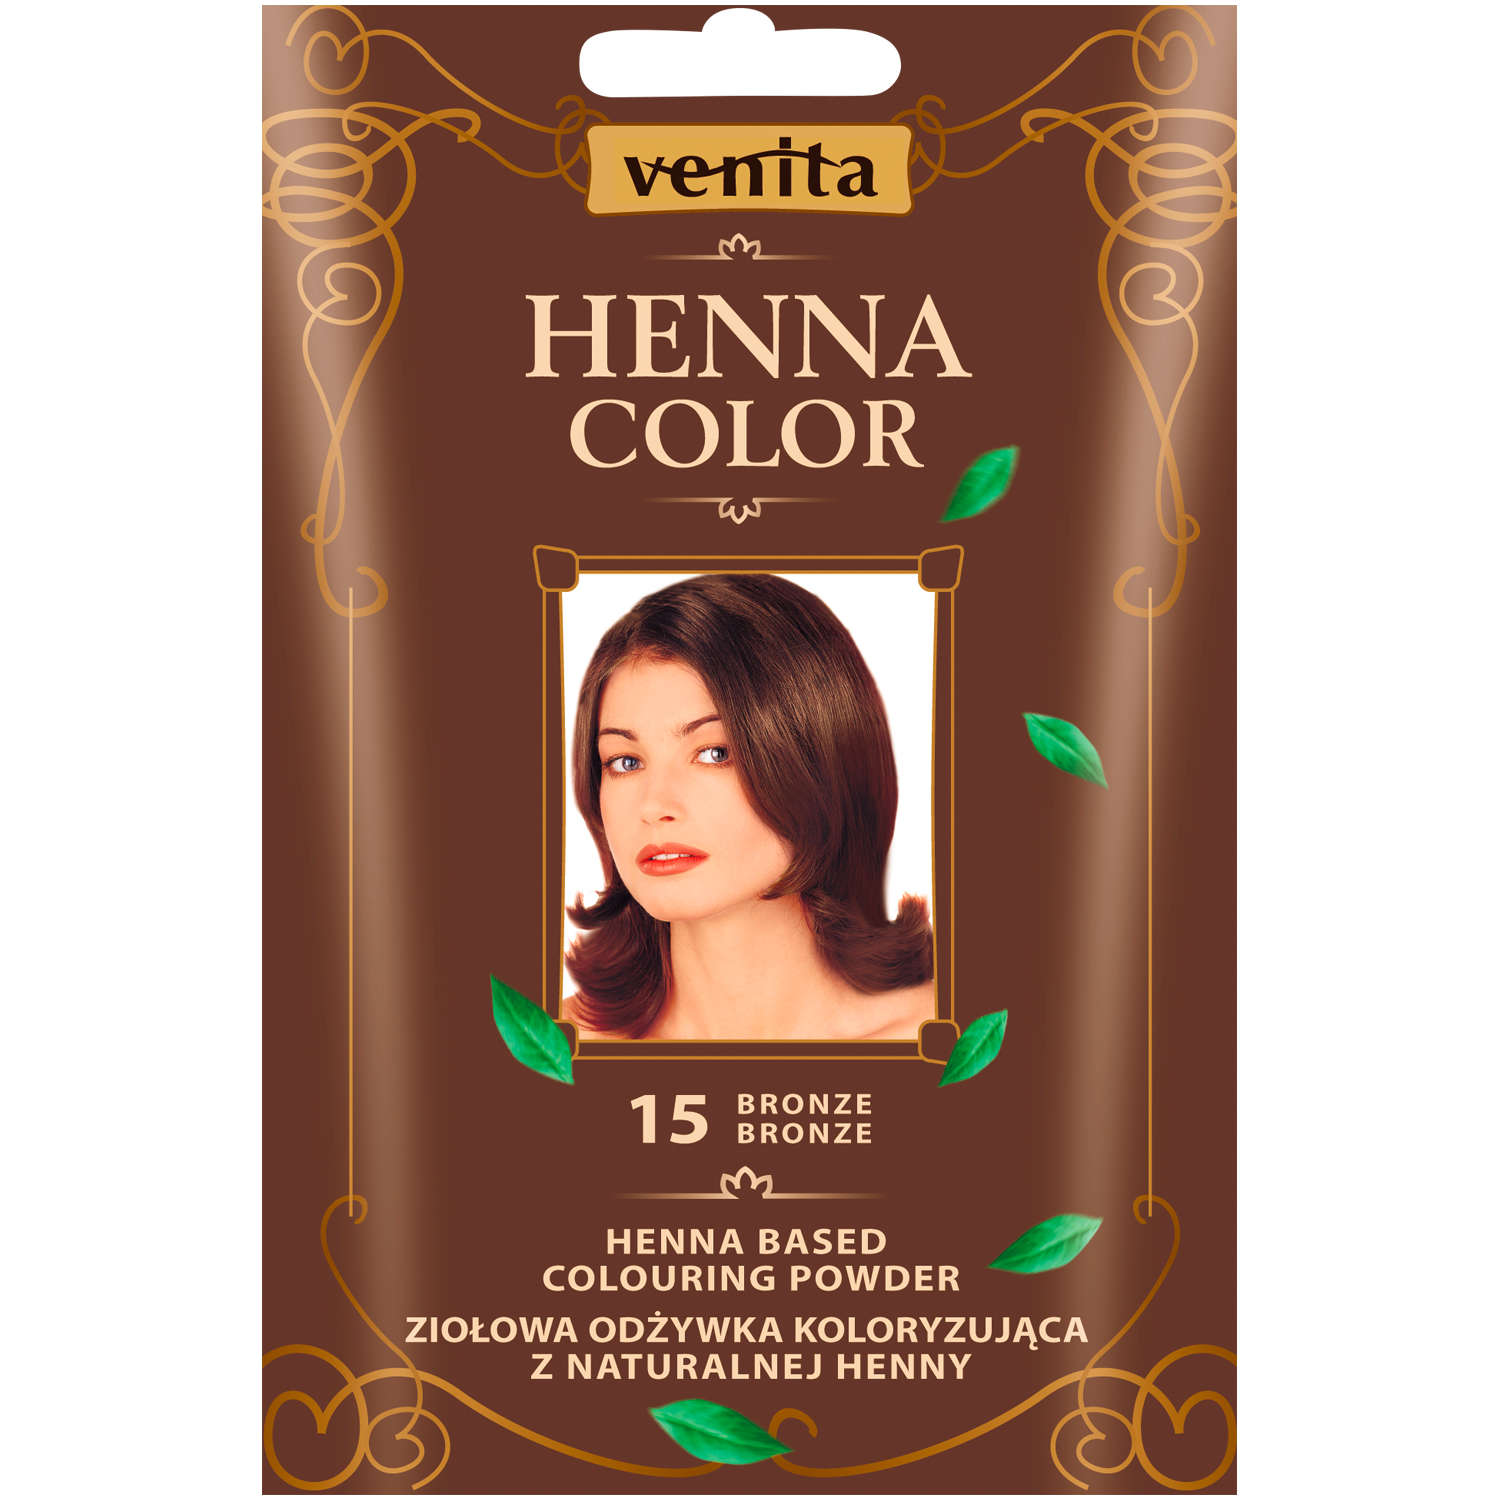 Venita Henna Color травяной кондиционер-краска с хной для волос 15 бронза, 30 г